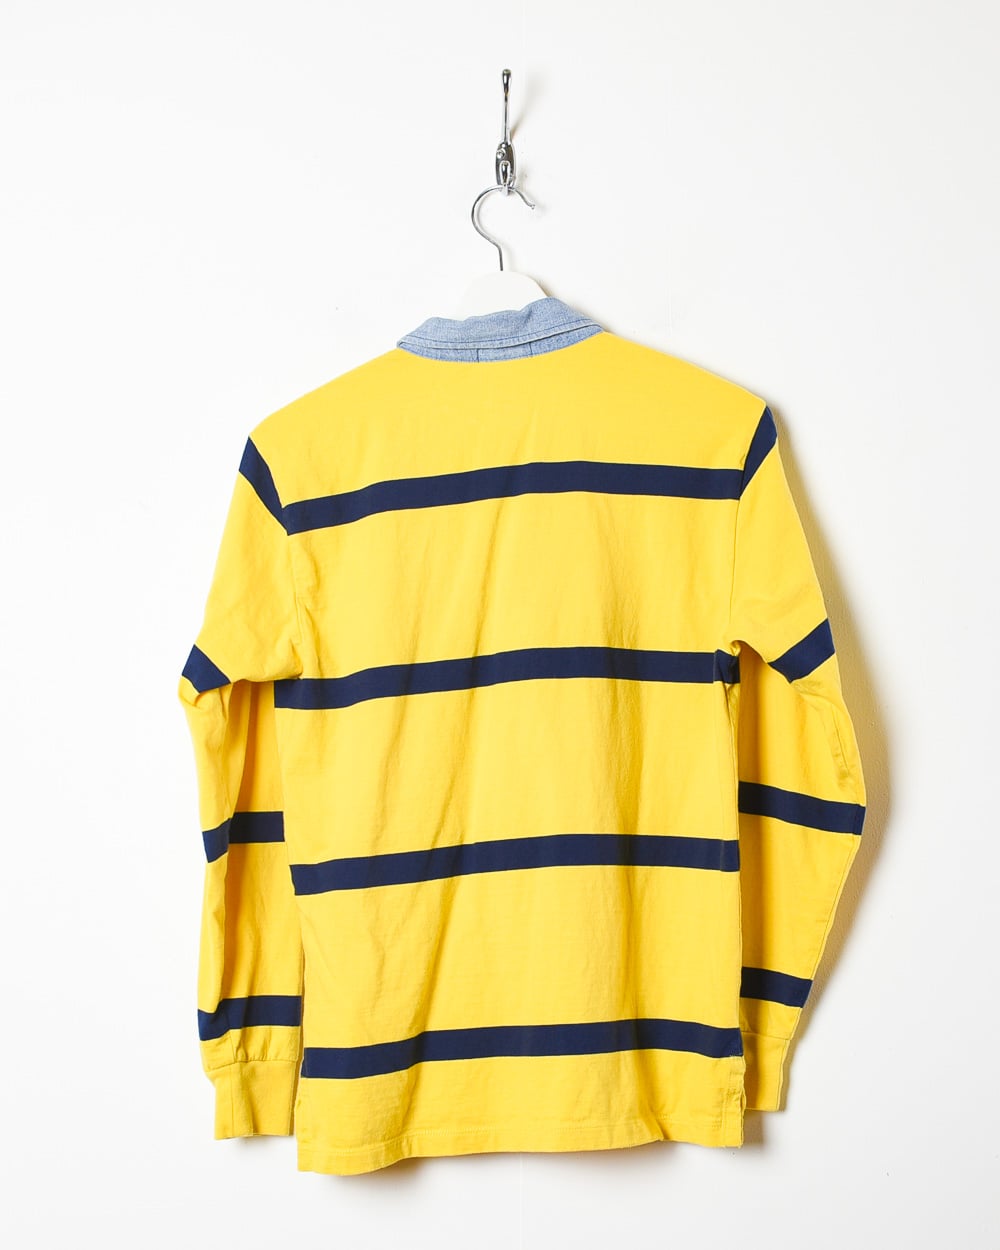 Yellow Polo Ralph Lauren Rugby Shirt - Medium Women's